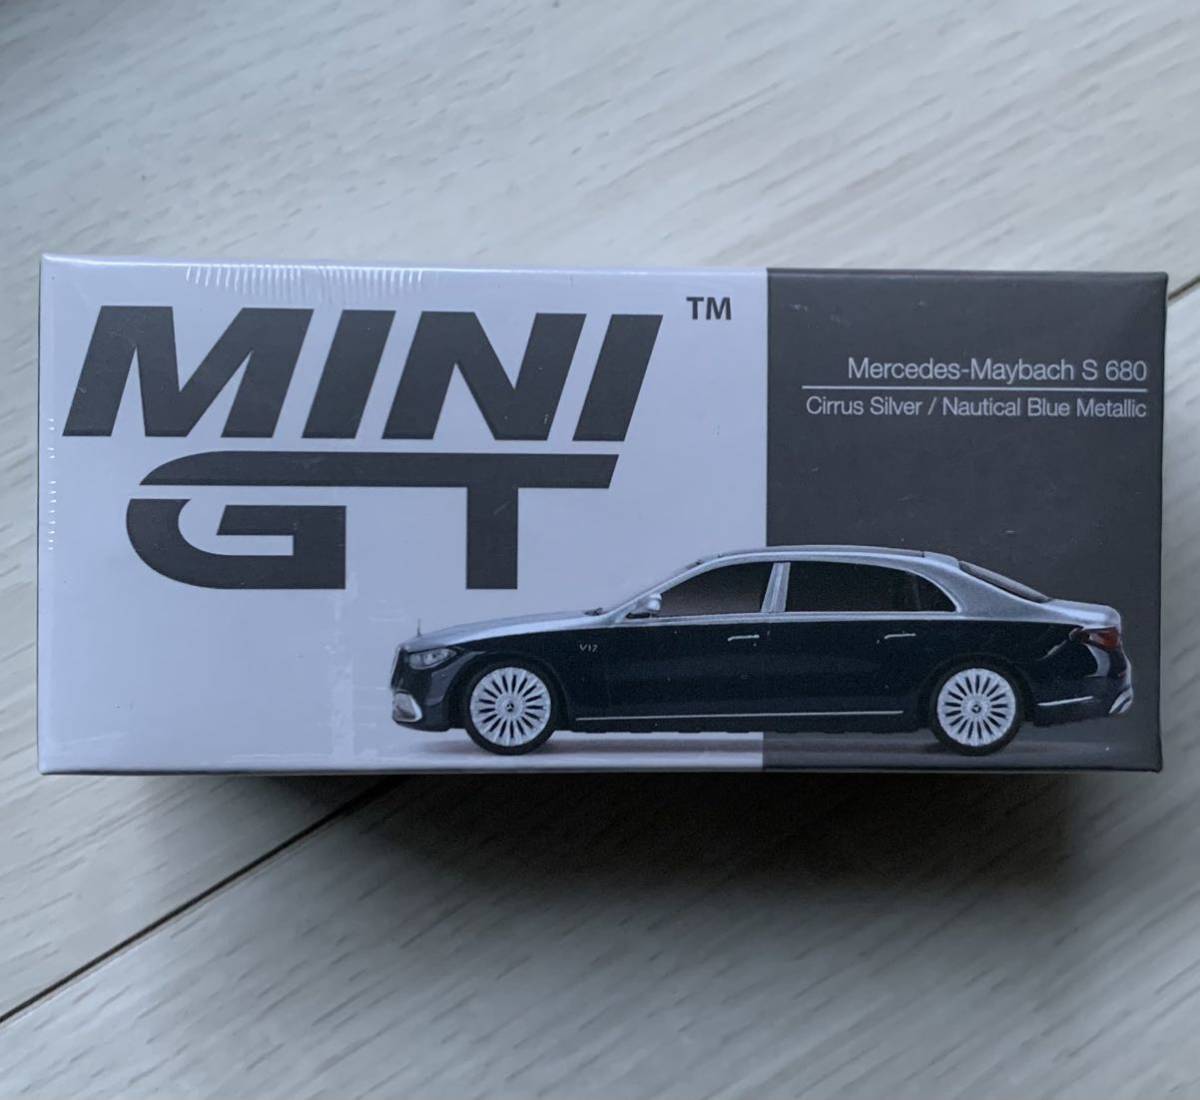 1/64　MINI-GT　メルセデス マイバッハ S680 シーラスシルバー / ノーティカルブルーメタリック　MGT00516-L　★ MINI GT ミニカー　新品_画像2